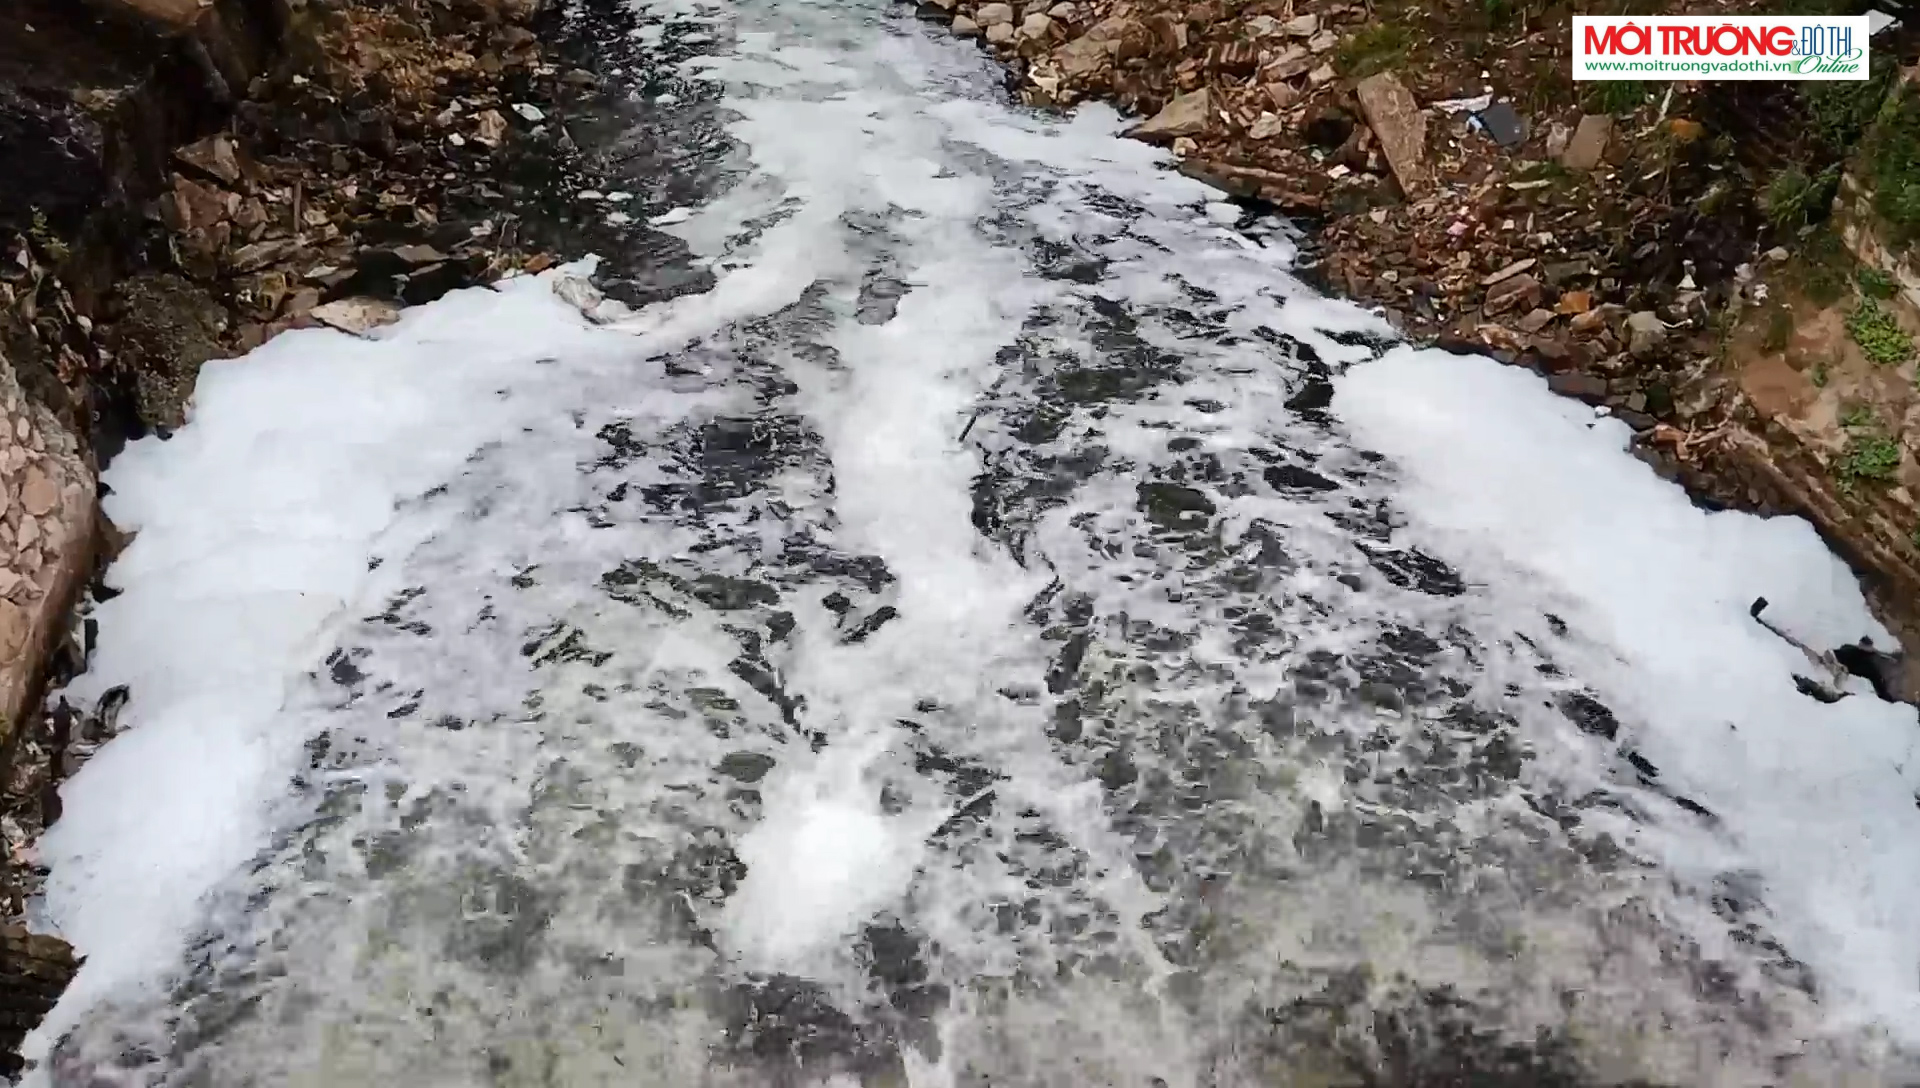 Nước thải sinh hoạt đang biến sông Cầu Đá thành 'dòng sông chết'?